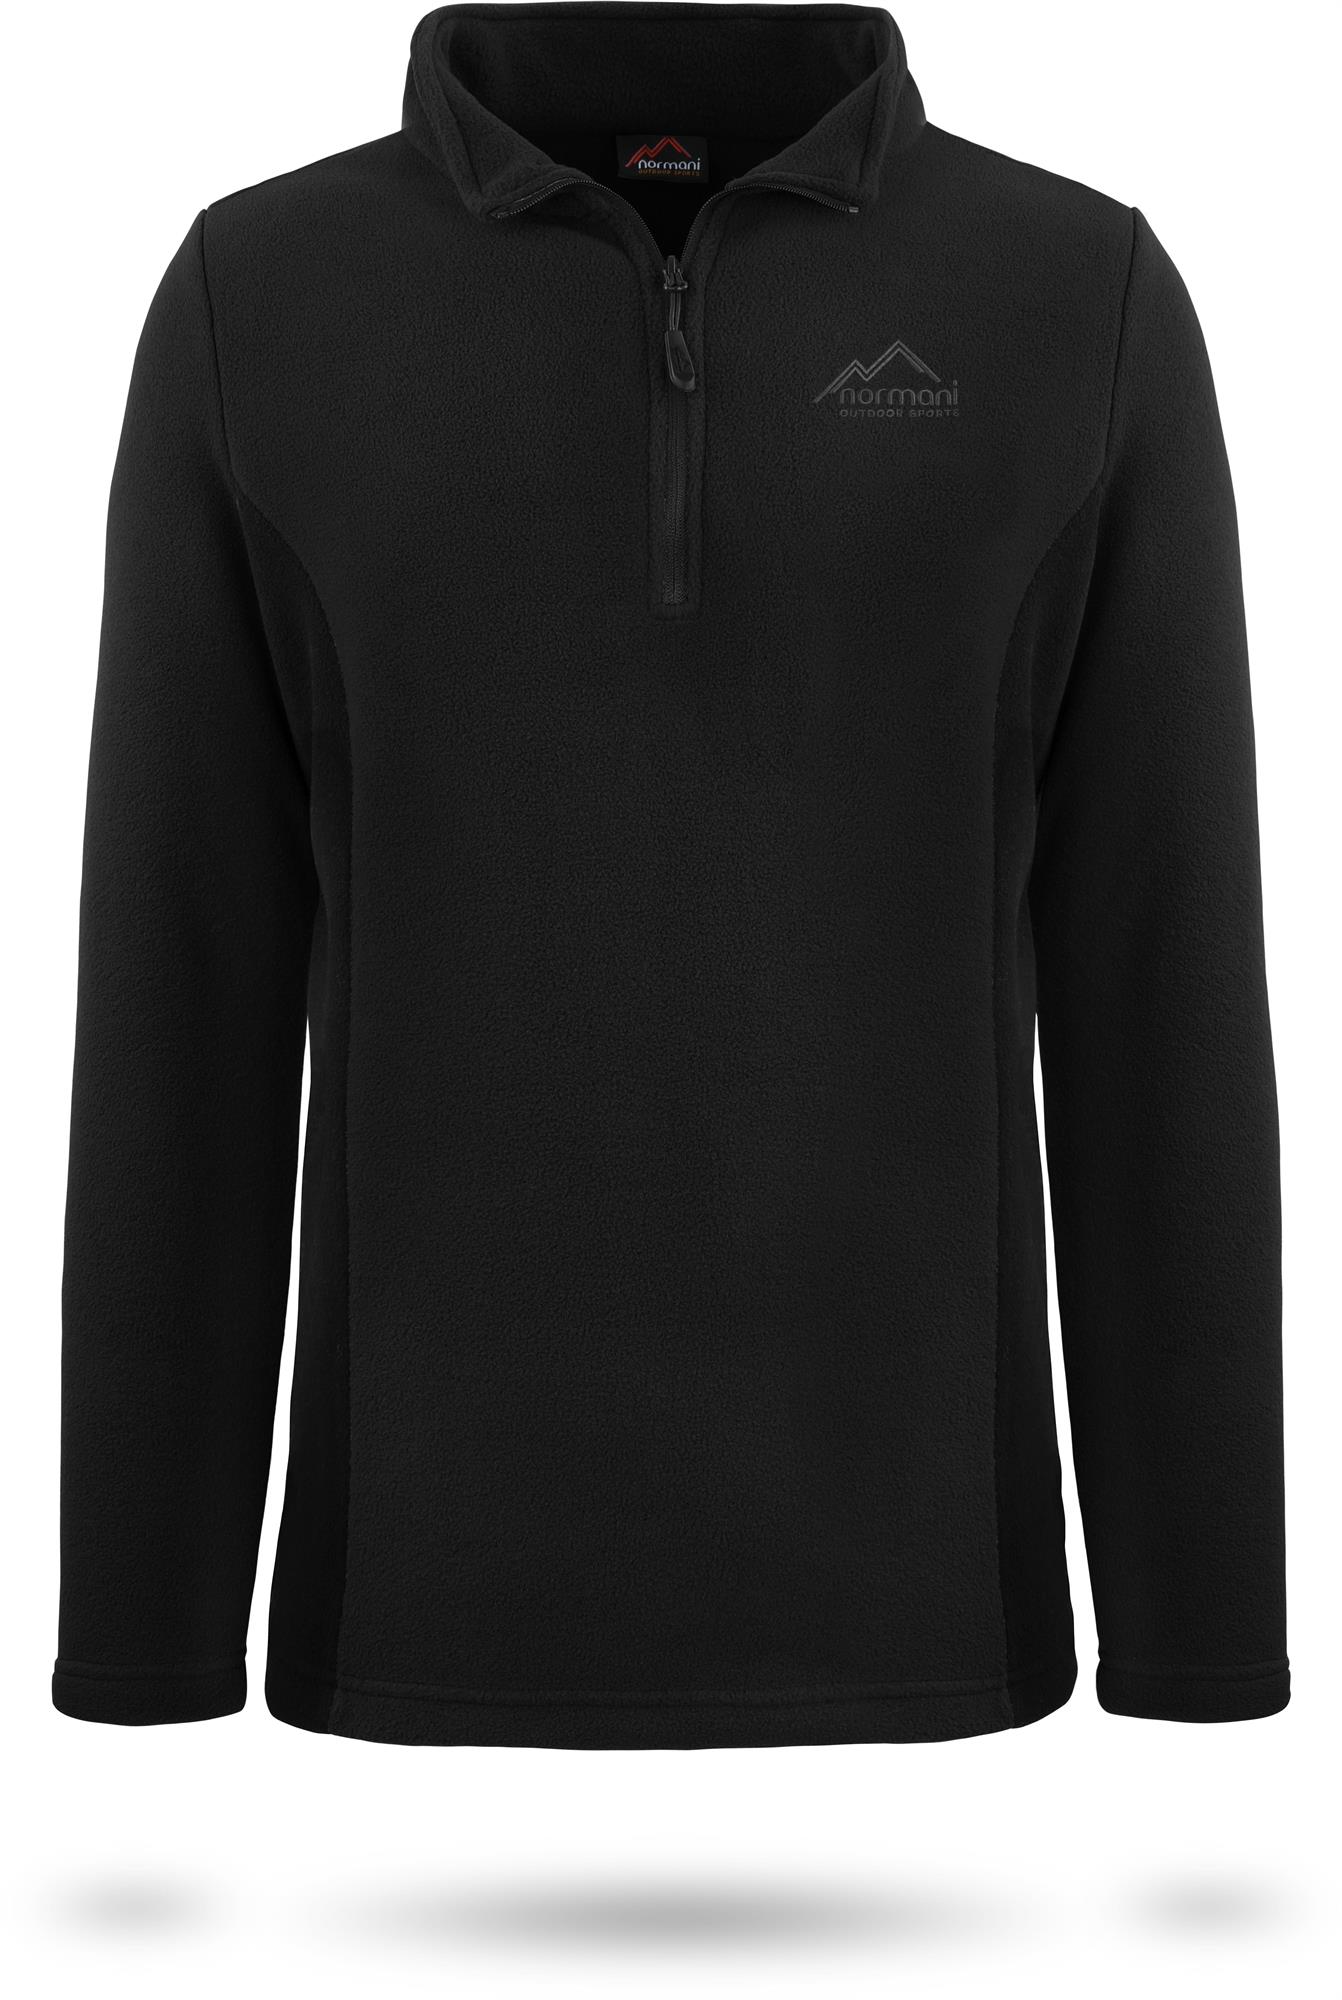 normani Fleecepullover Sport-Sweatshirt für Herren 1/4 Zip Reißverschluss und Stehkragen 280 g/m² Dicke Grammatur auch in Übergröße 